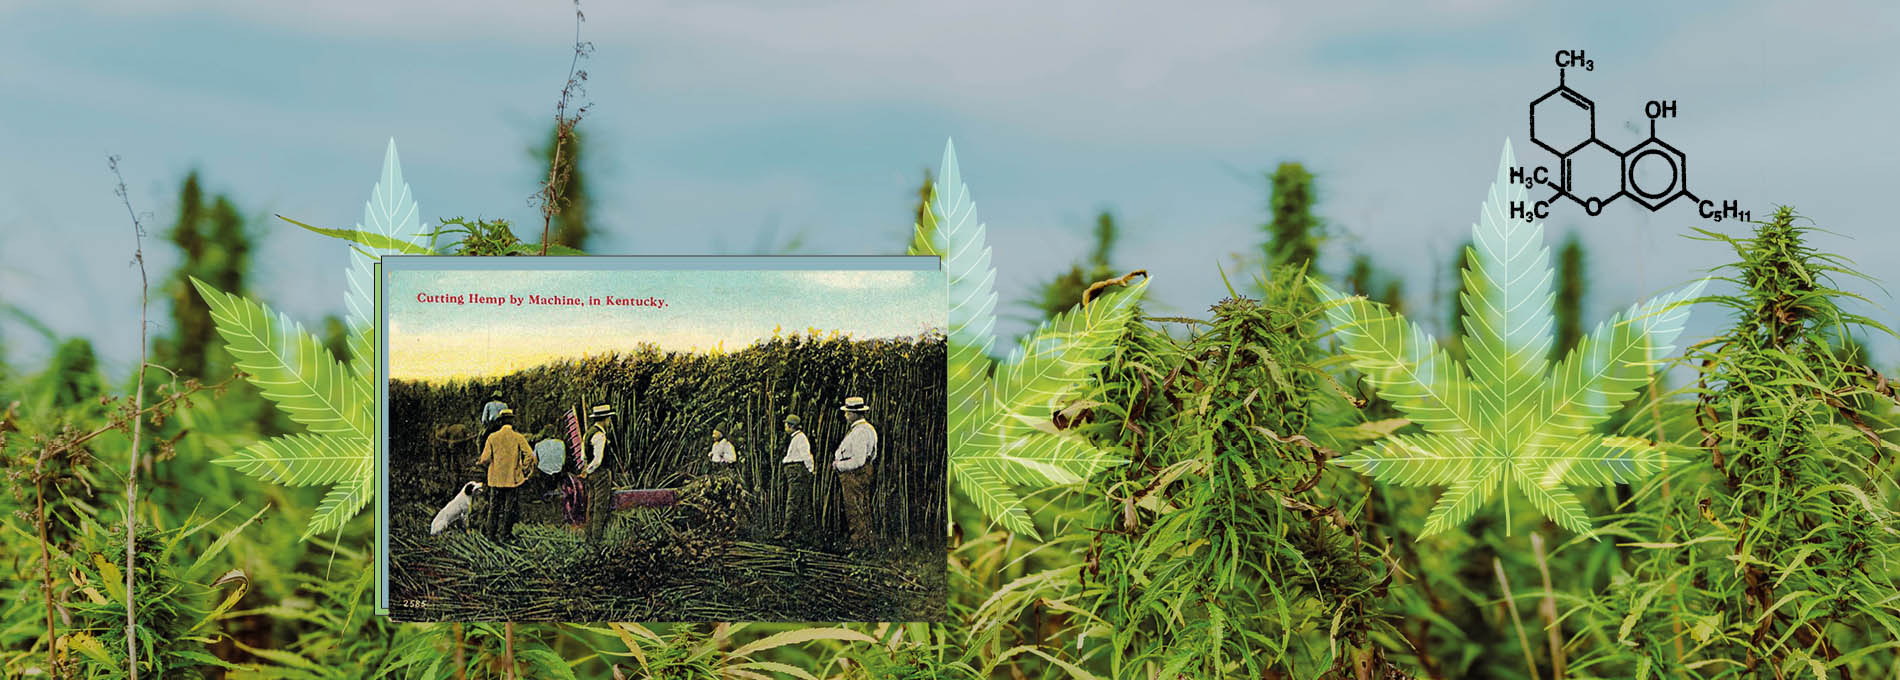 Plantação de maconha com colagem de uma propaganda antiga de uma fazenda de maconha no Kentucky, com uma ilustração da fórmula química do tch